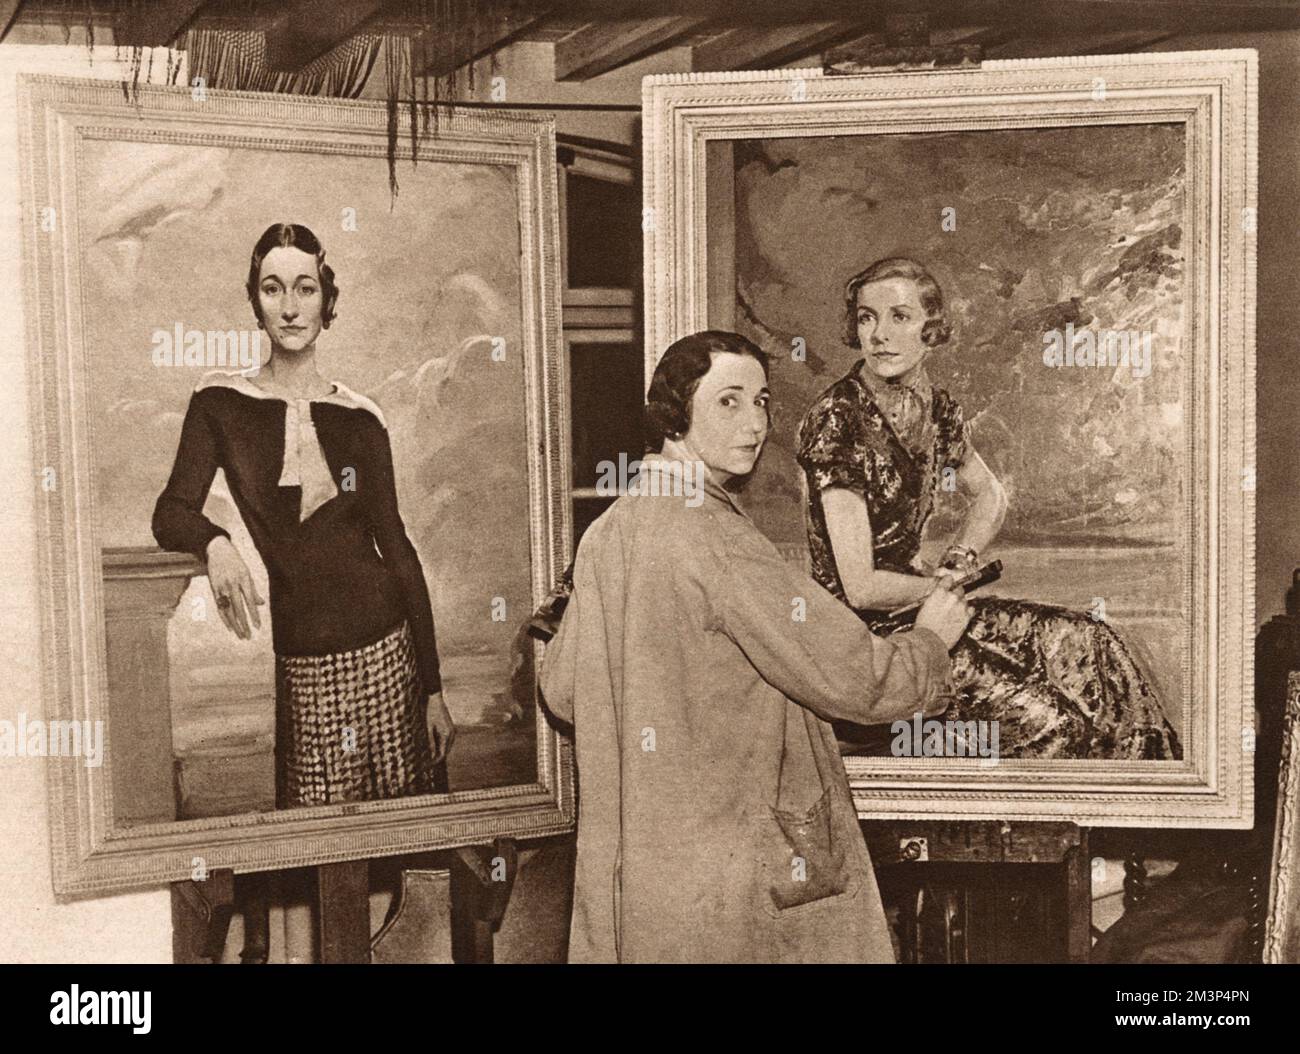 La signora R. C. Anderson, artista americana che dipinse sotto il nome di M. Baynon Copeland, ha raffigurato nel suo studio un ritratto di Lady Louis Mountbatten. Un ritratto della signora Wallis Simpson, poi Duchessa di Windsor, è visto sulla sua sinistra. La duchessa era un amico dell'artista. Data: 1937 Foto Stock